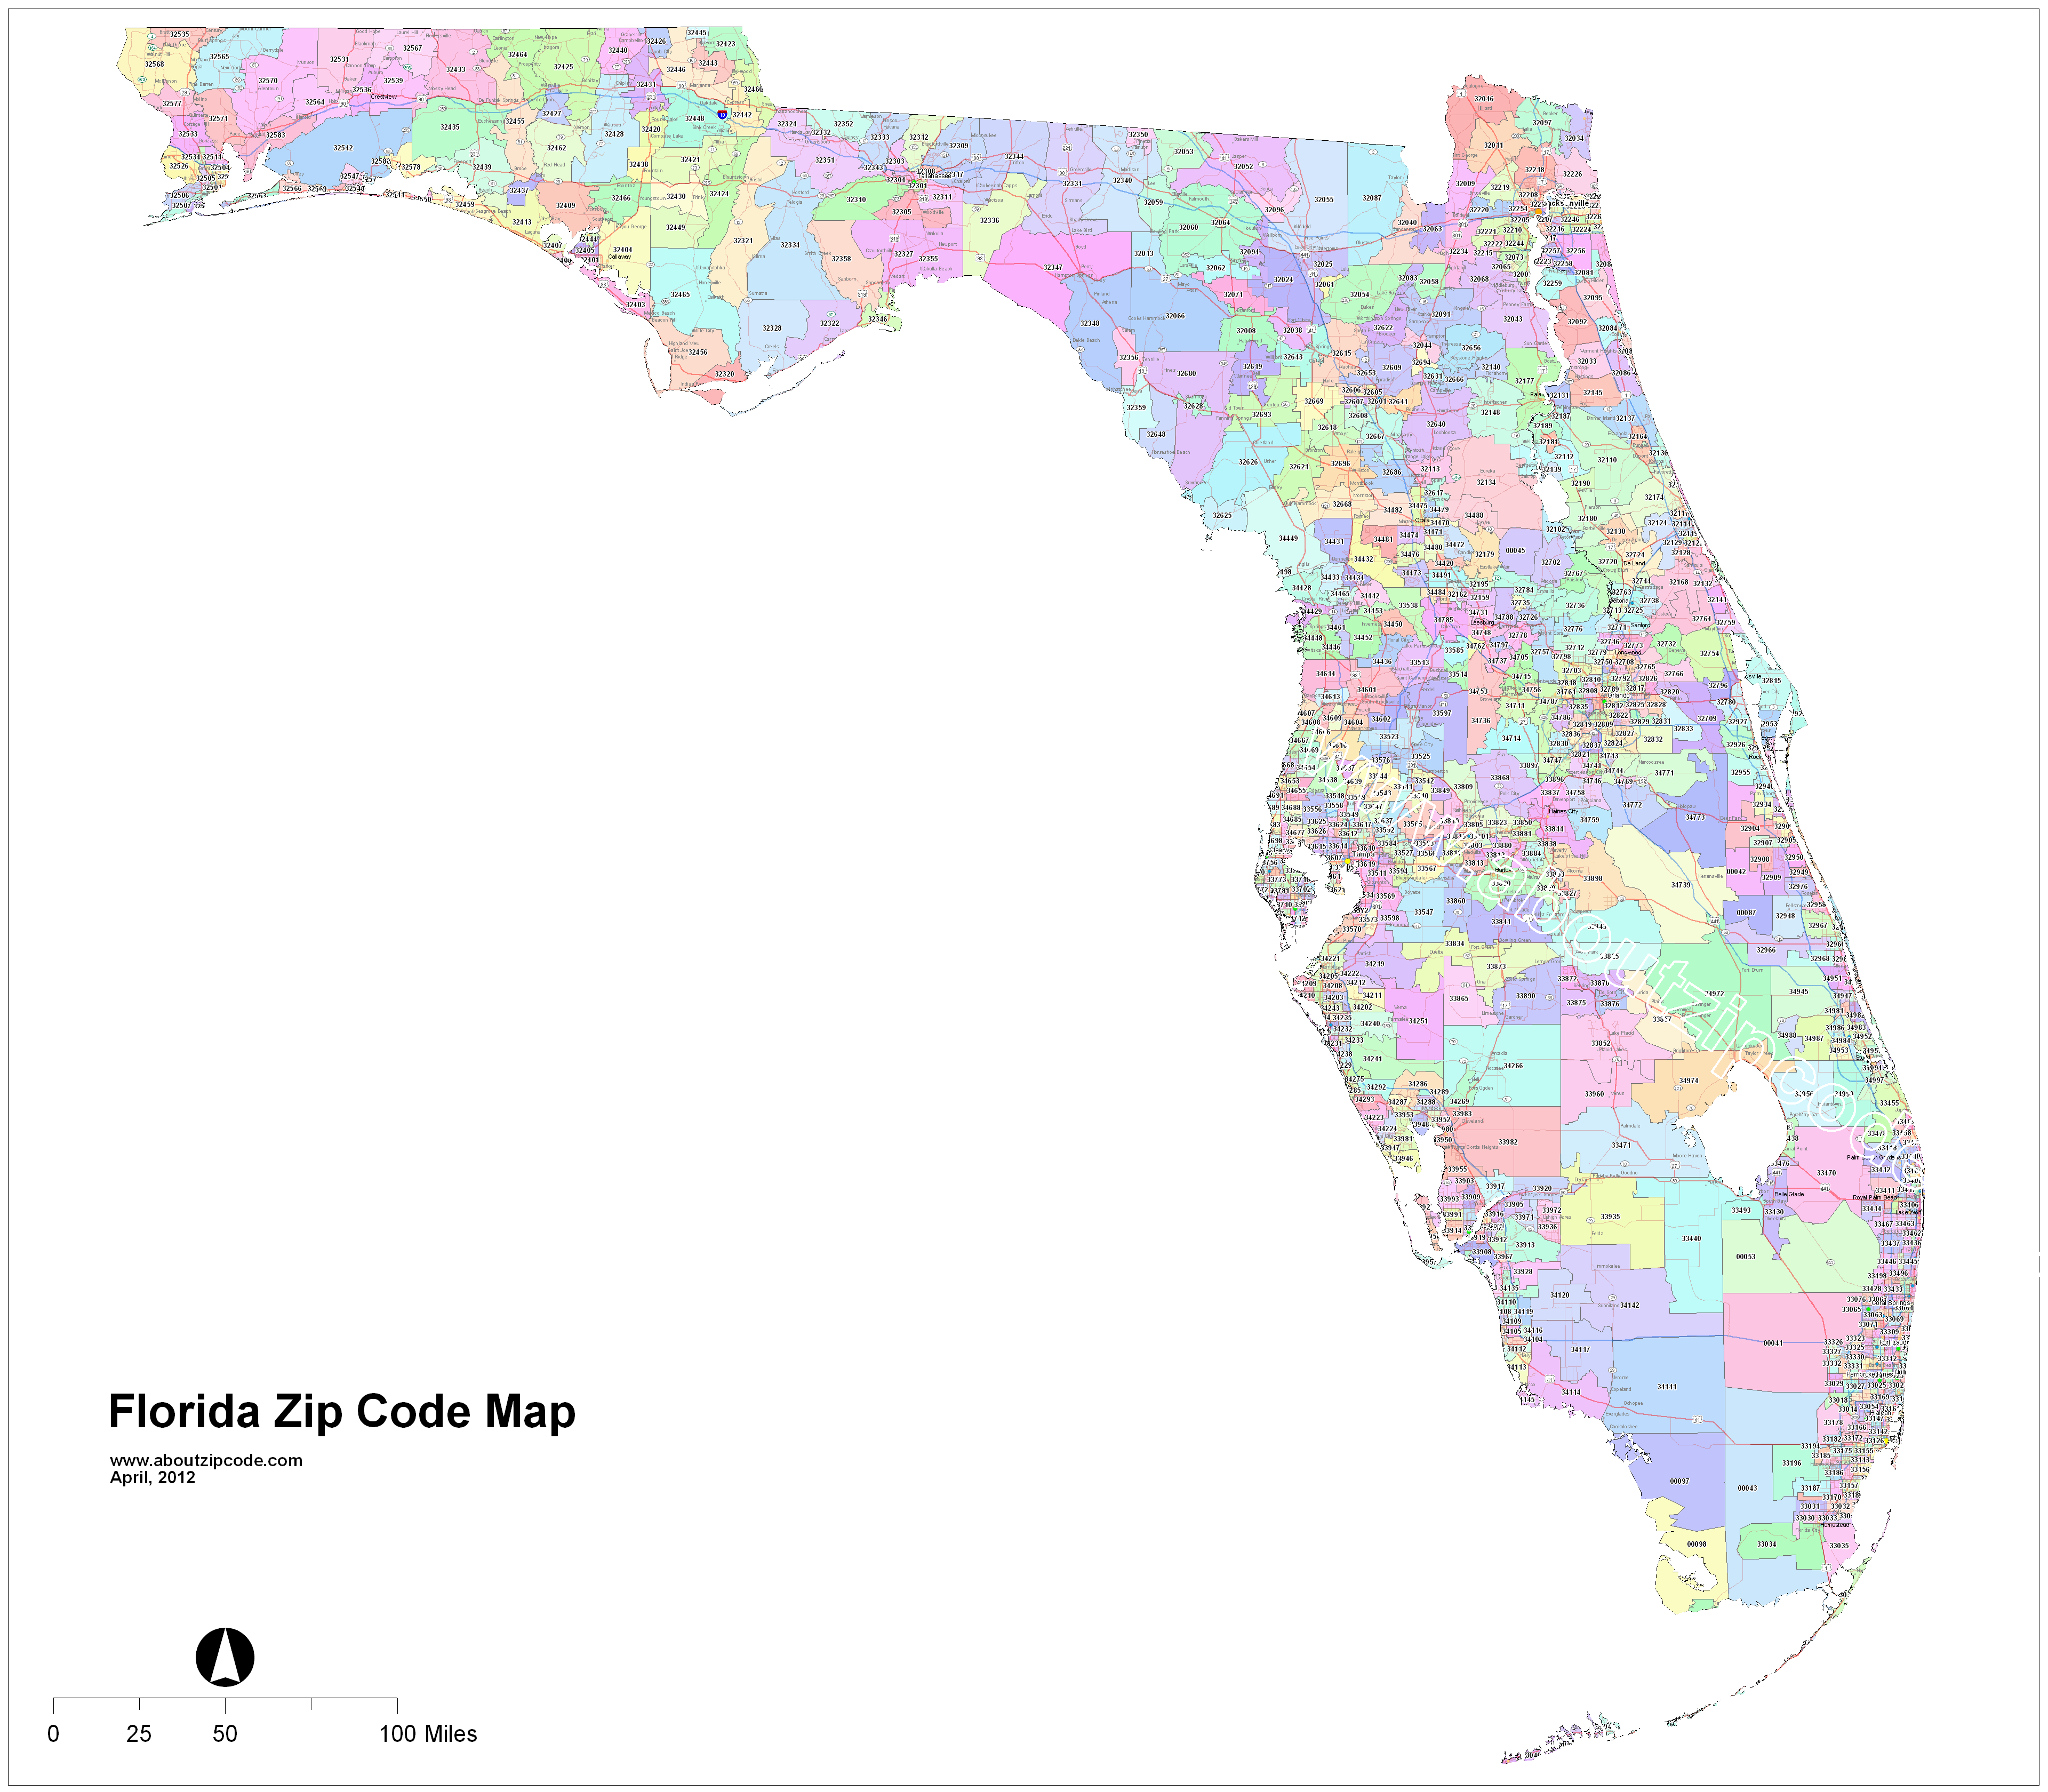 brandon fl zip code map Florida Zip Code Maps Free Florida Zip Code Maps brandon fl zip code map